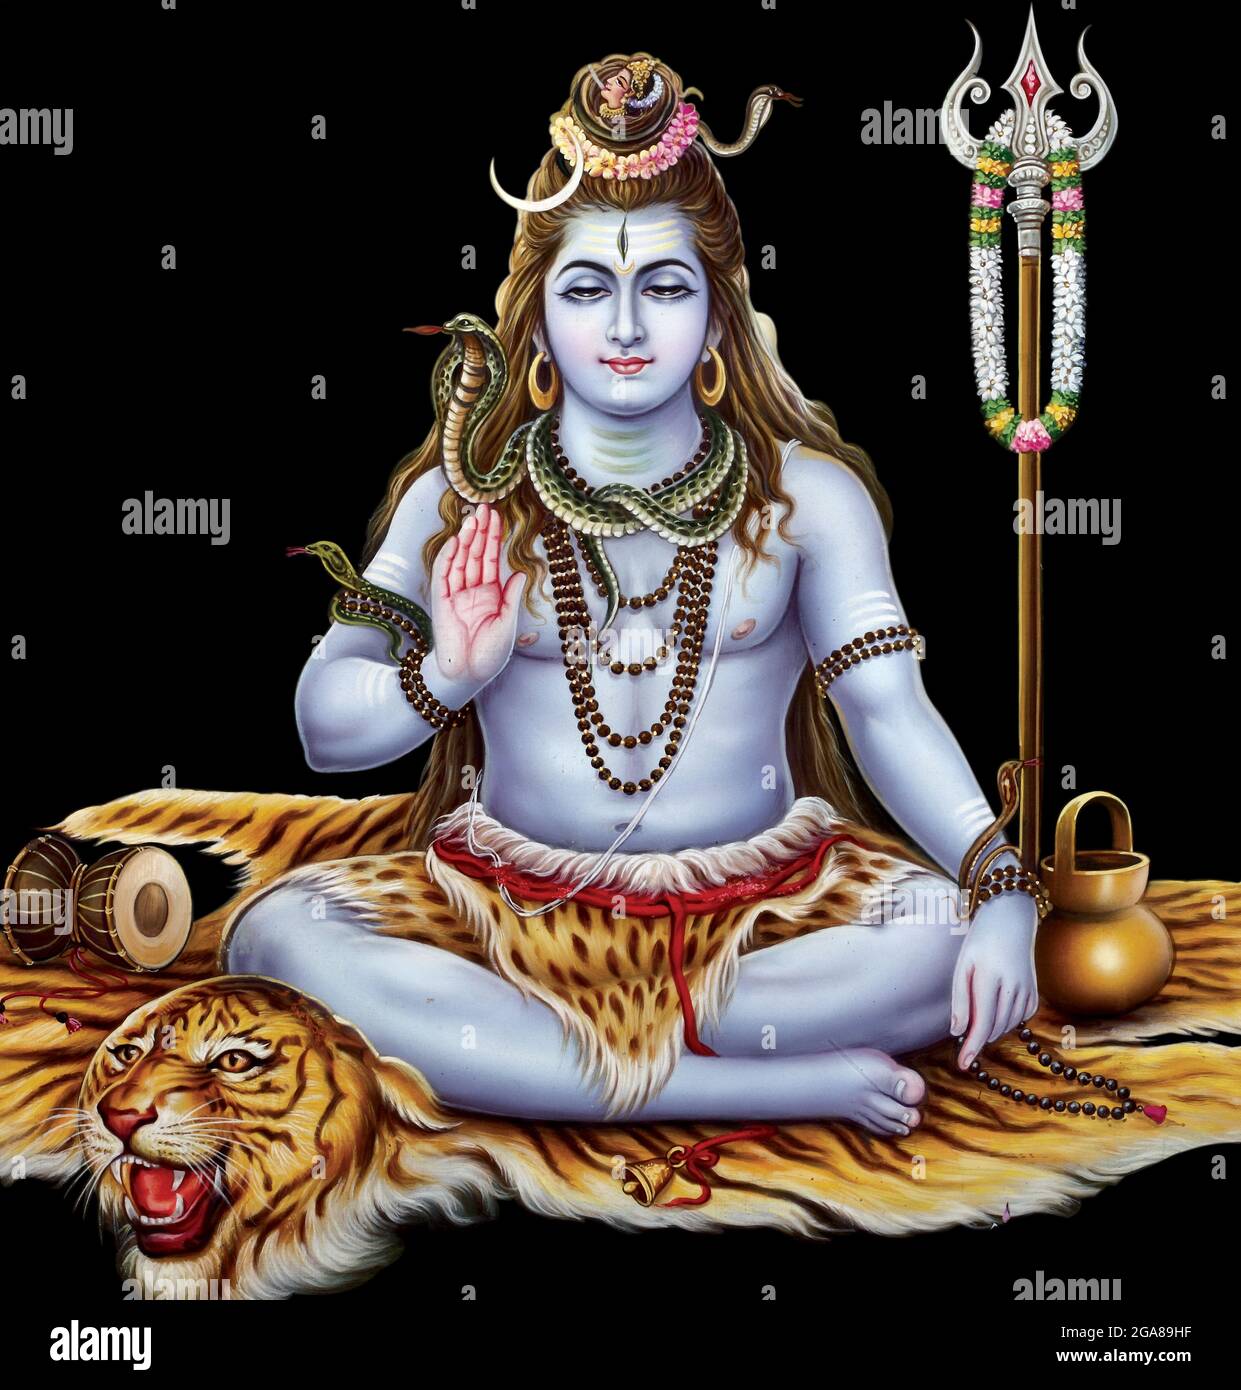 Bild von Lord Shiva mit hochauflösender hinduistischer Mythologie Stockfoto